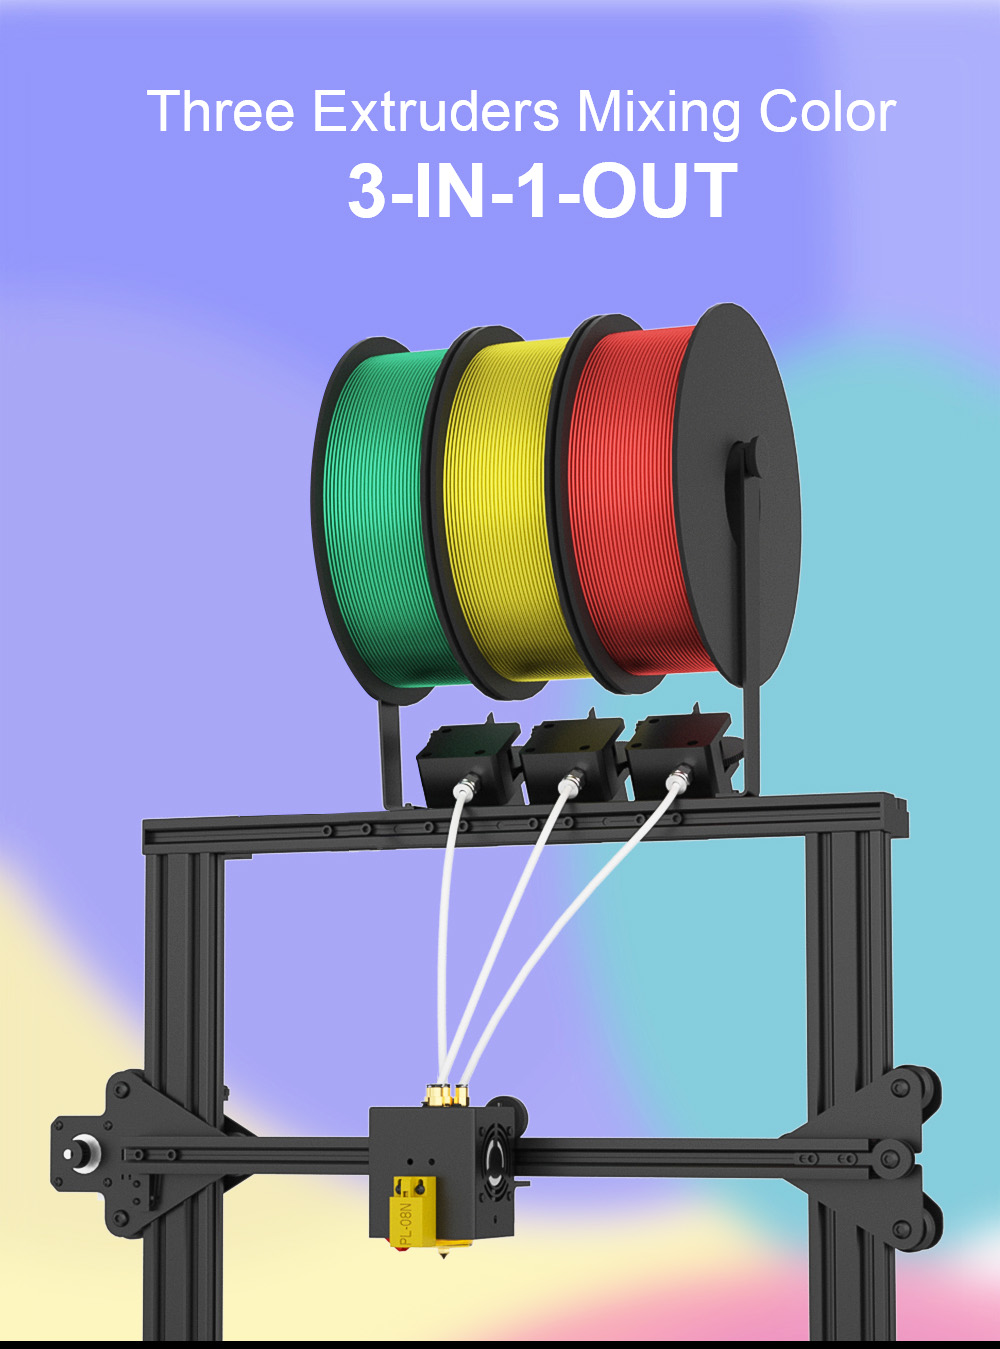 Zonestar Z8PM3 Extruder 3-IN-1-OUT Farbmischung 3D-Drucker LCD-Bildschirm Hochpräzise Auflösung Bausatz – Schwarz